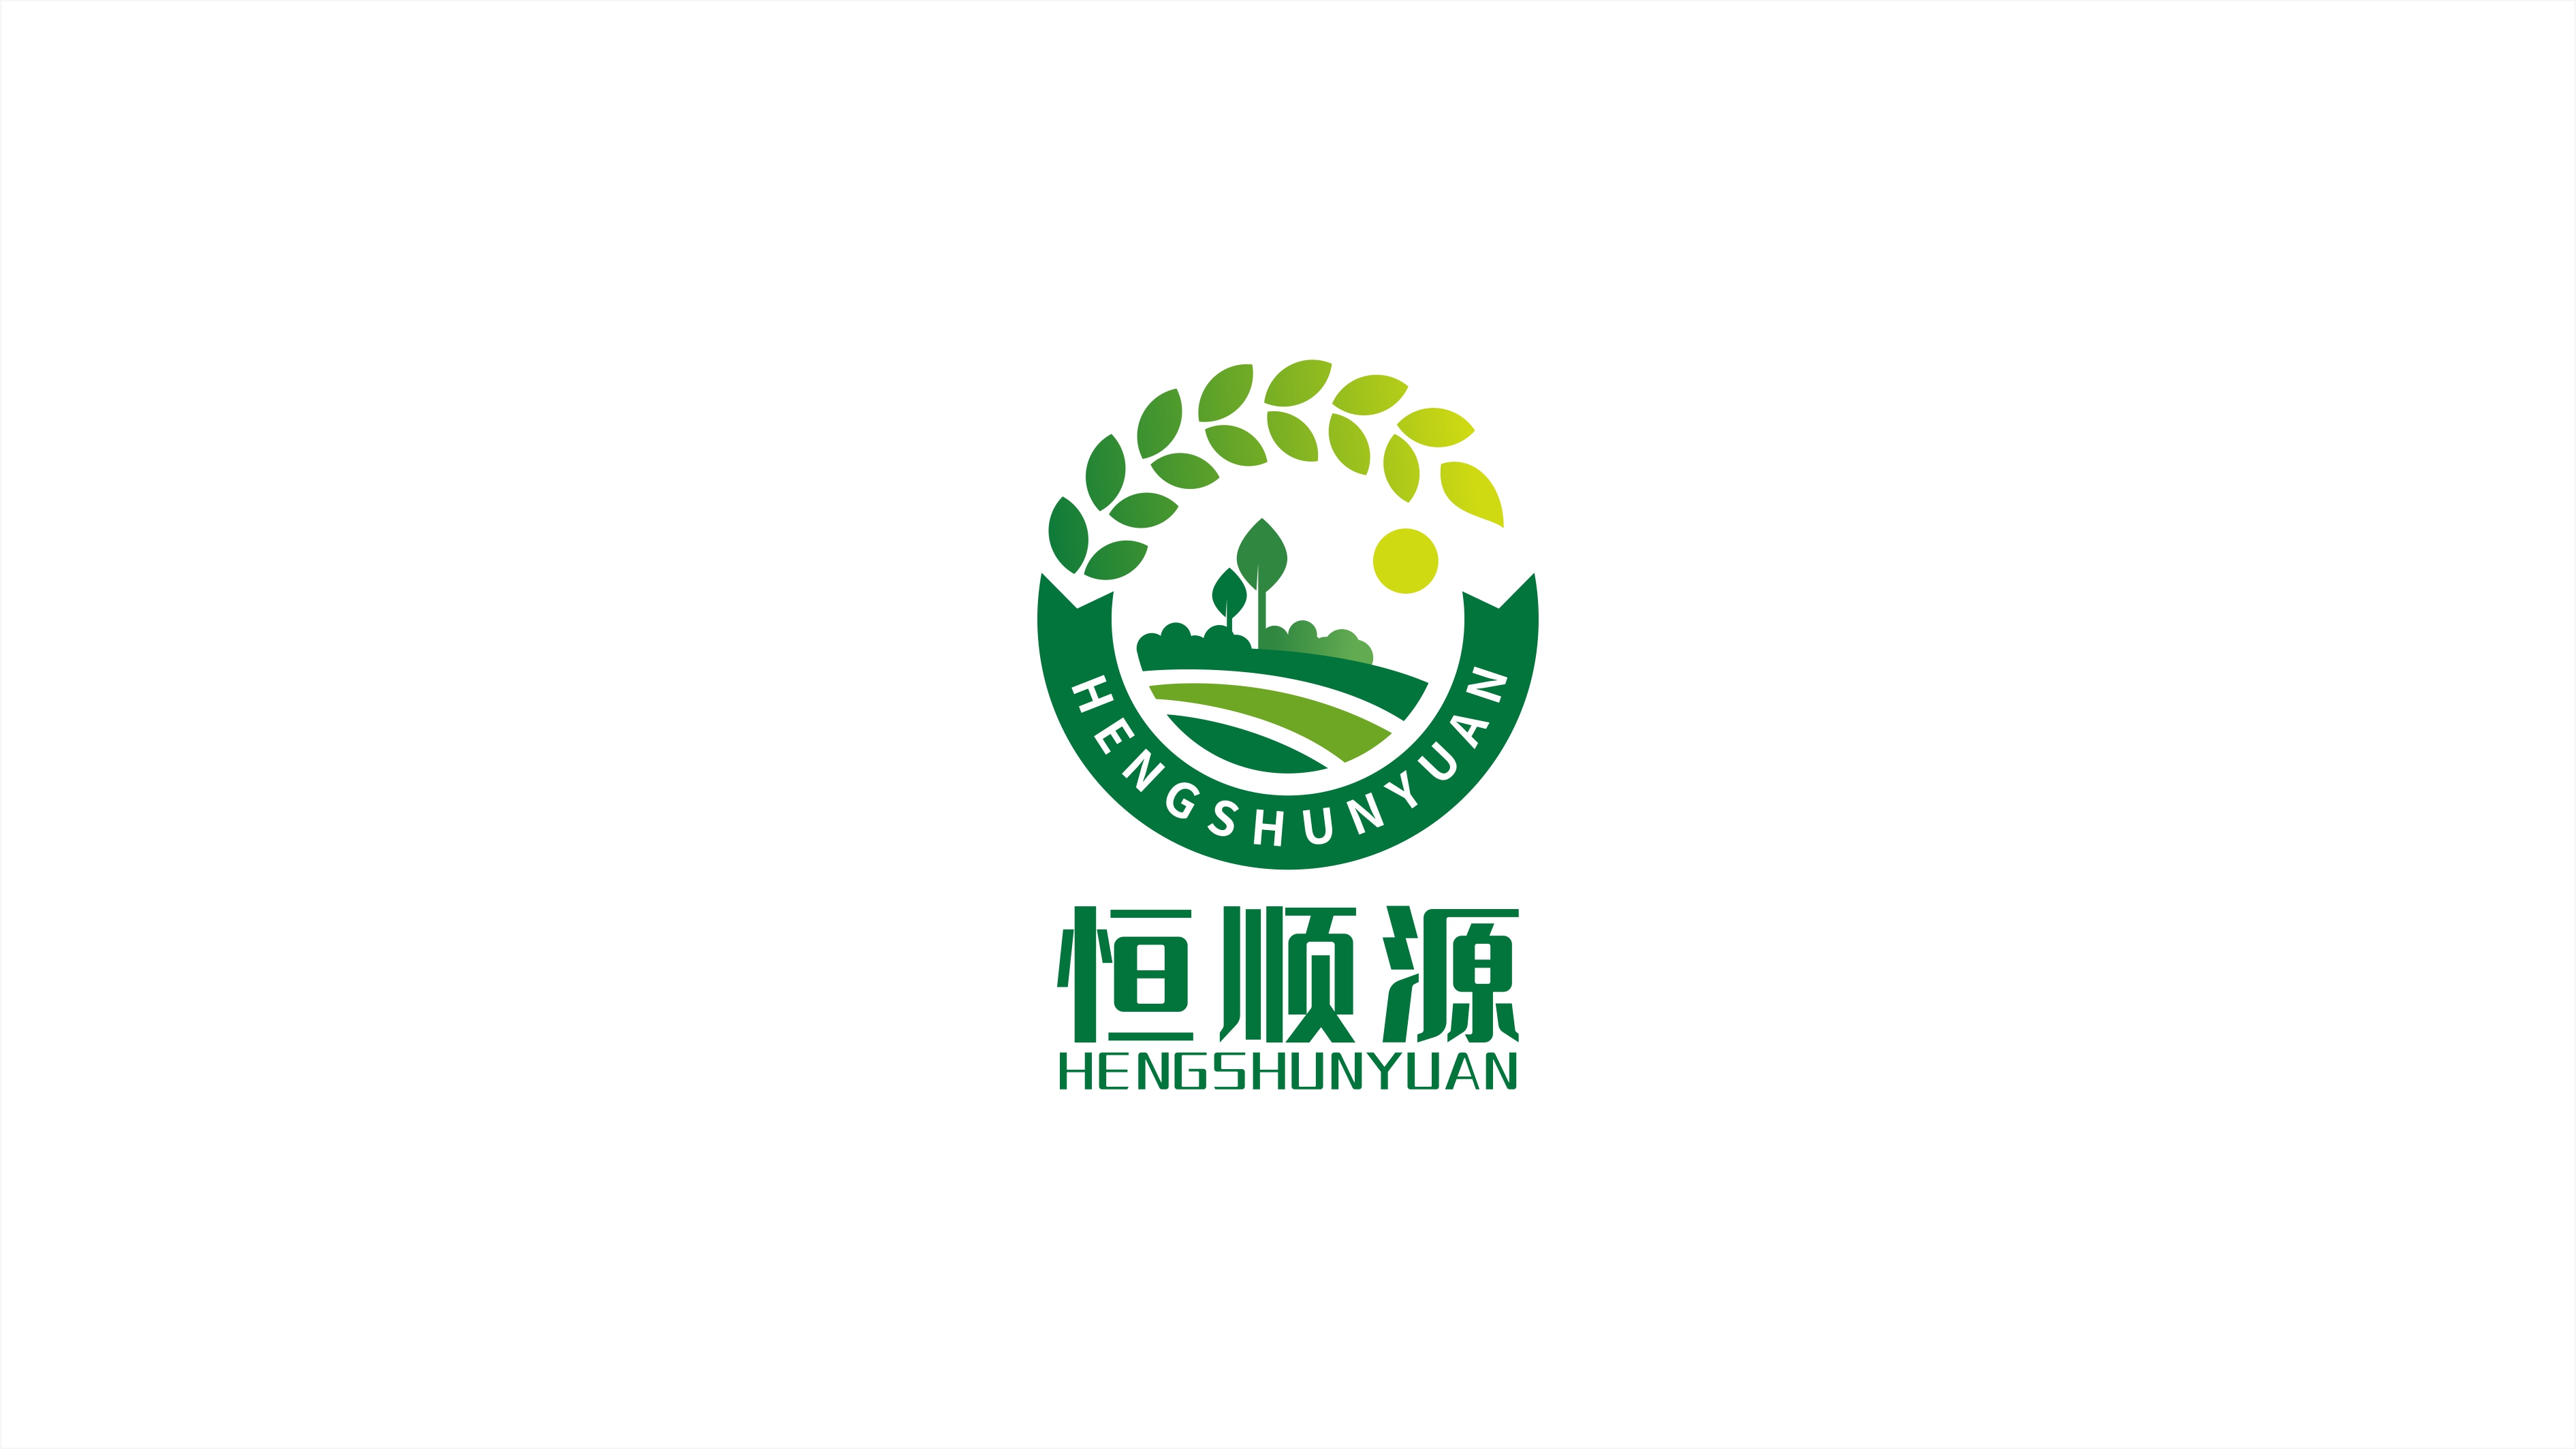 田园风格图形标-食品类logo设计